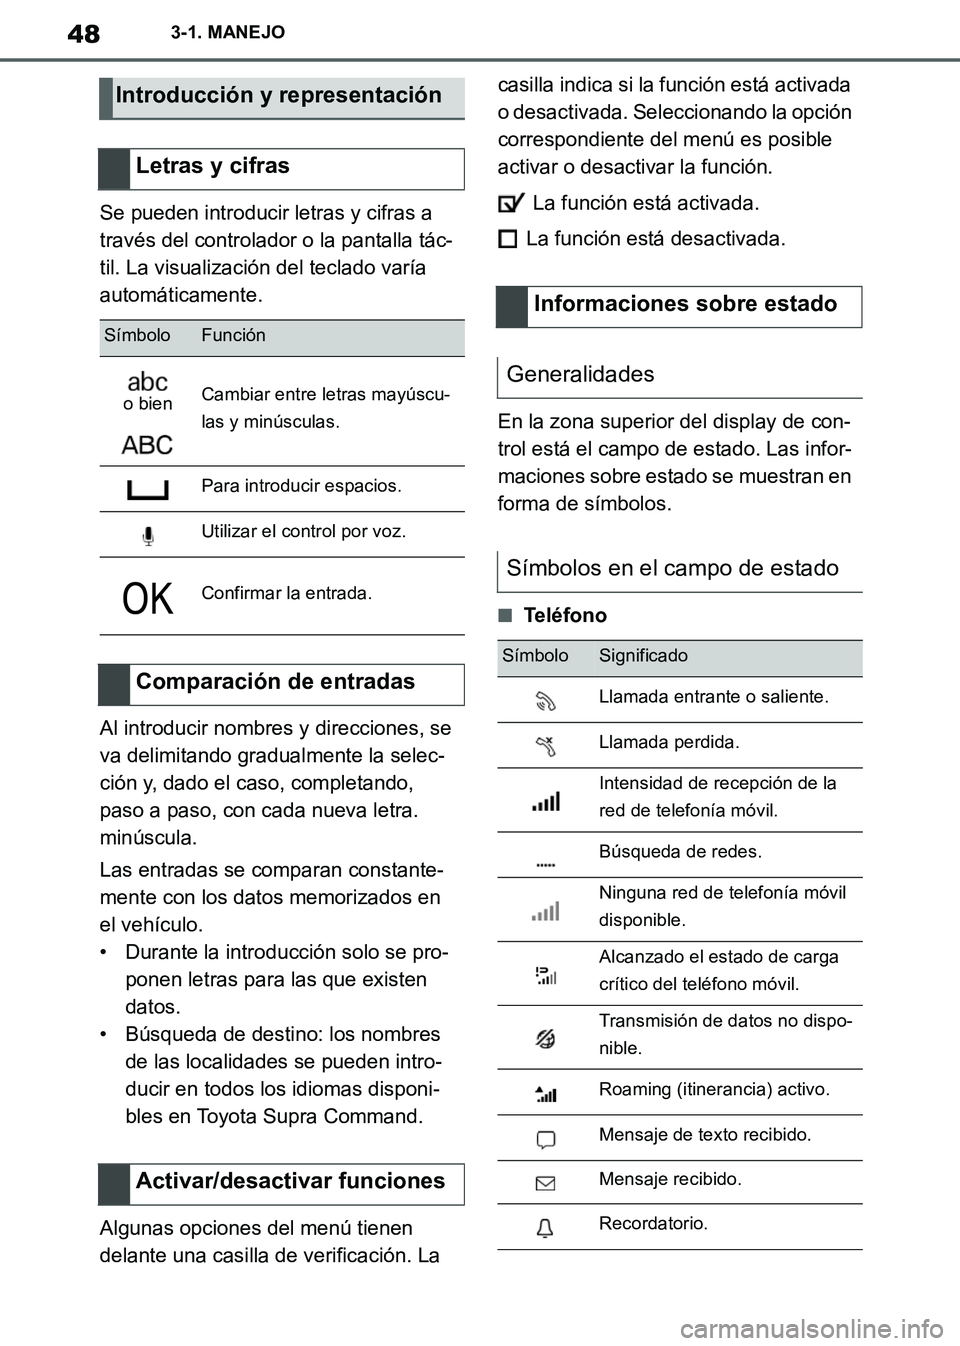 TOYOTA SUPRA 2019  Manuale de Empleo (in Spanish) 48
Supra Owners Manual_ES
3-1. MANEJO
Se pueden introducir letras y cifras a 
través del controlador o la pantalla tác-
til. La visualización del teclado varía 
automáticamente.
Al introducir no